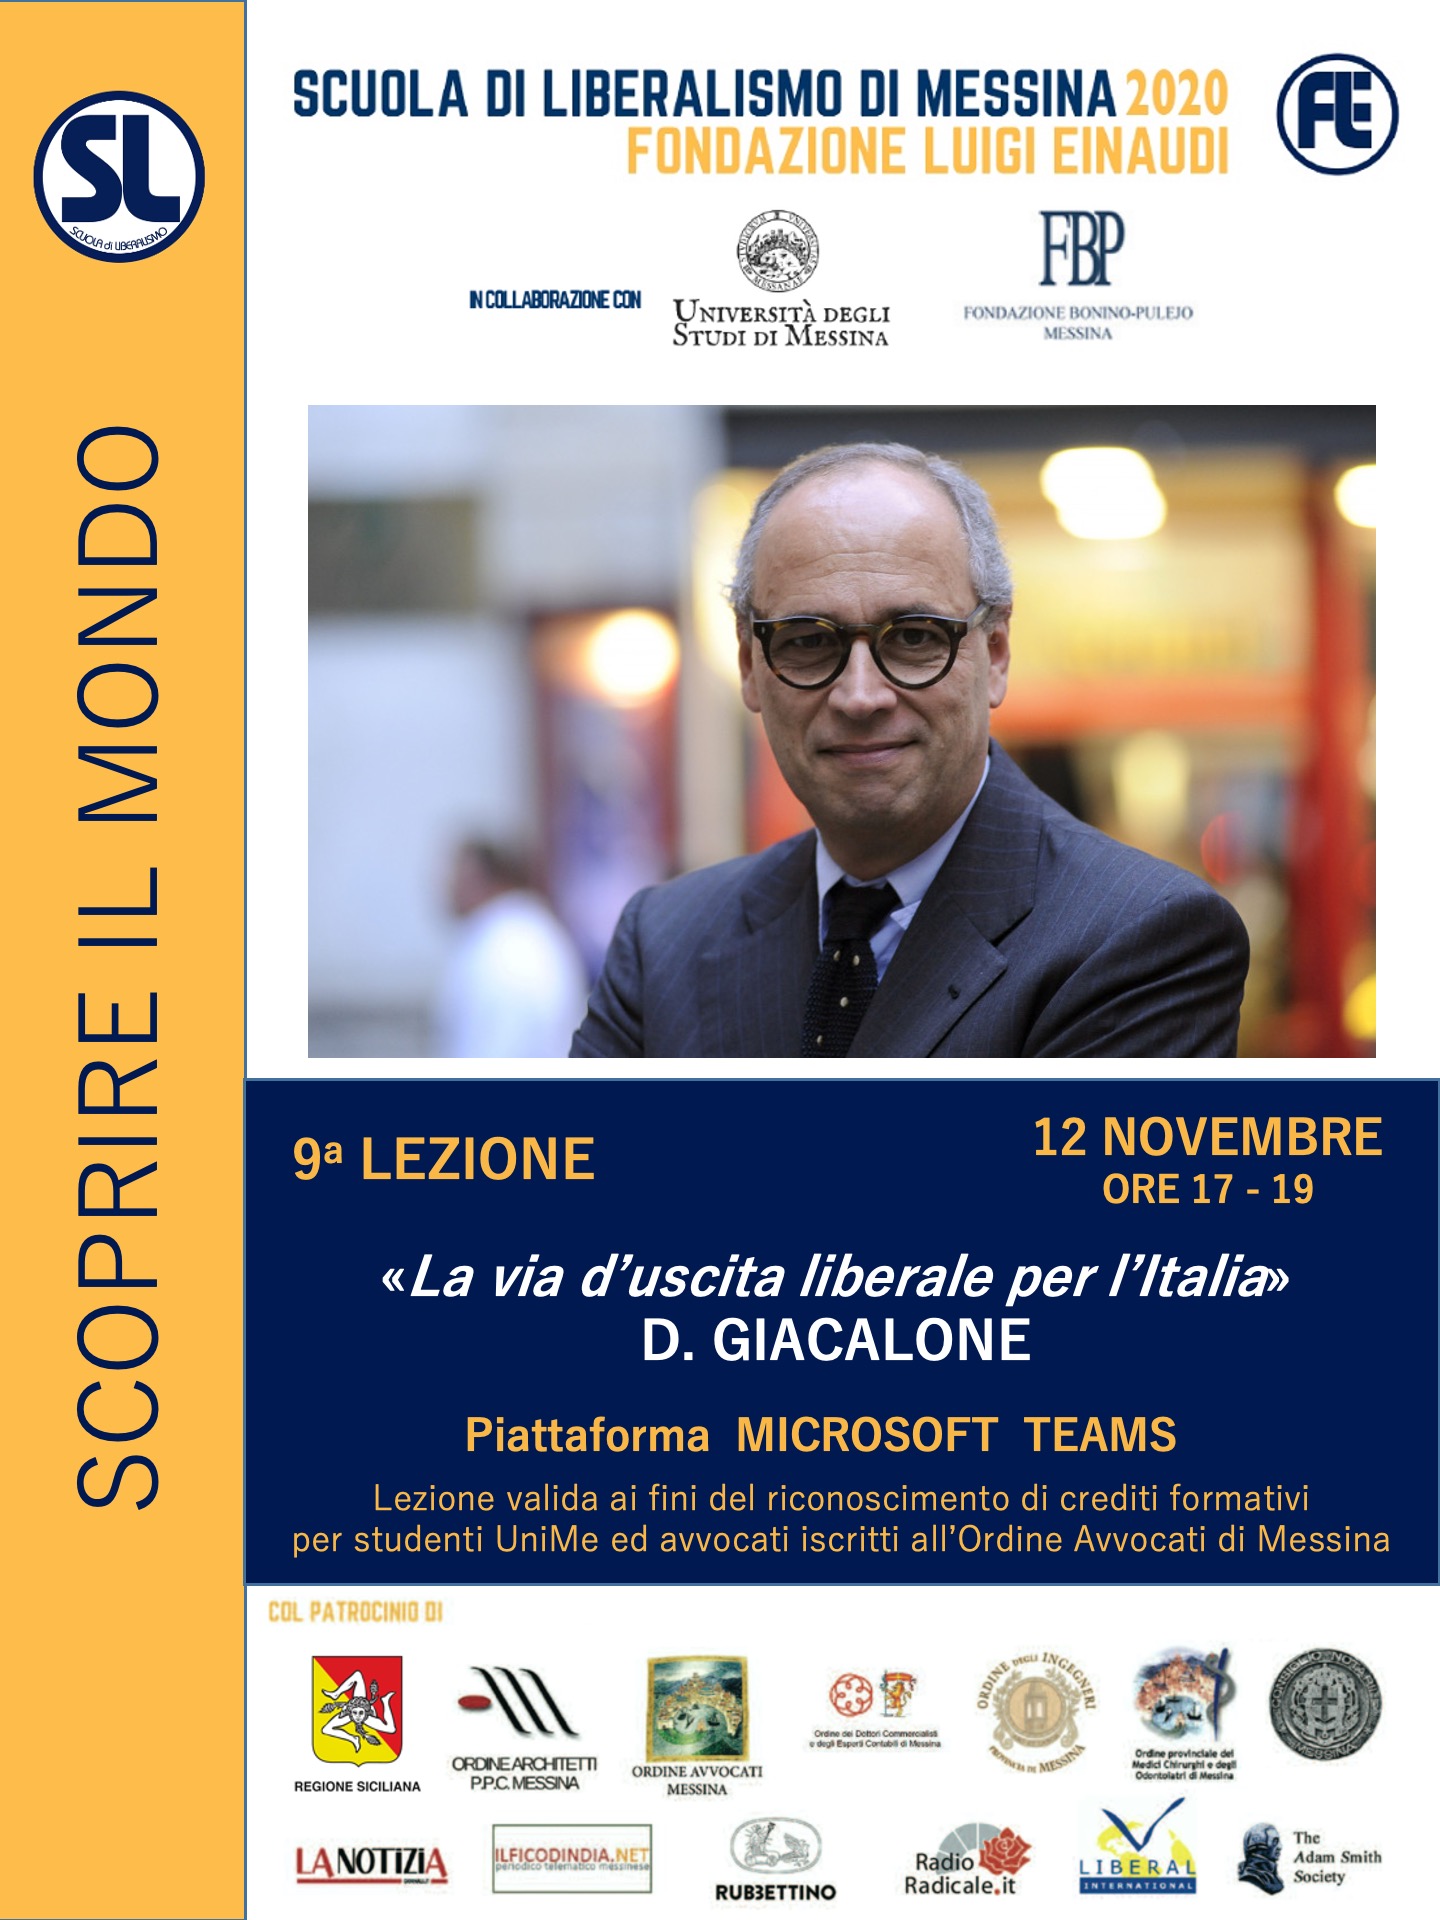 Scuola di Liberalismo 2020 Messina: 12 novembre lezione di Davide Giacalone